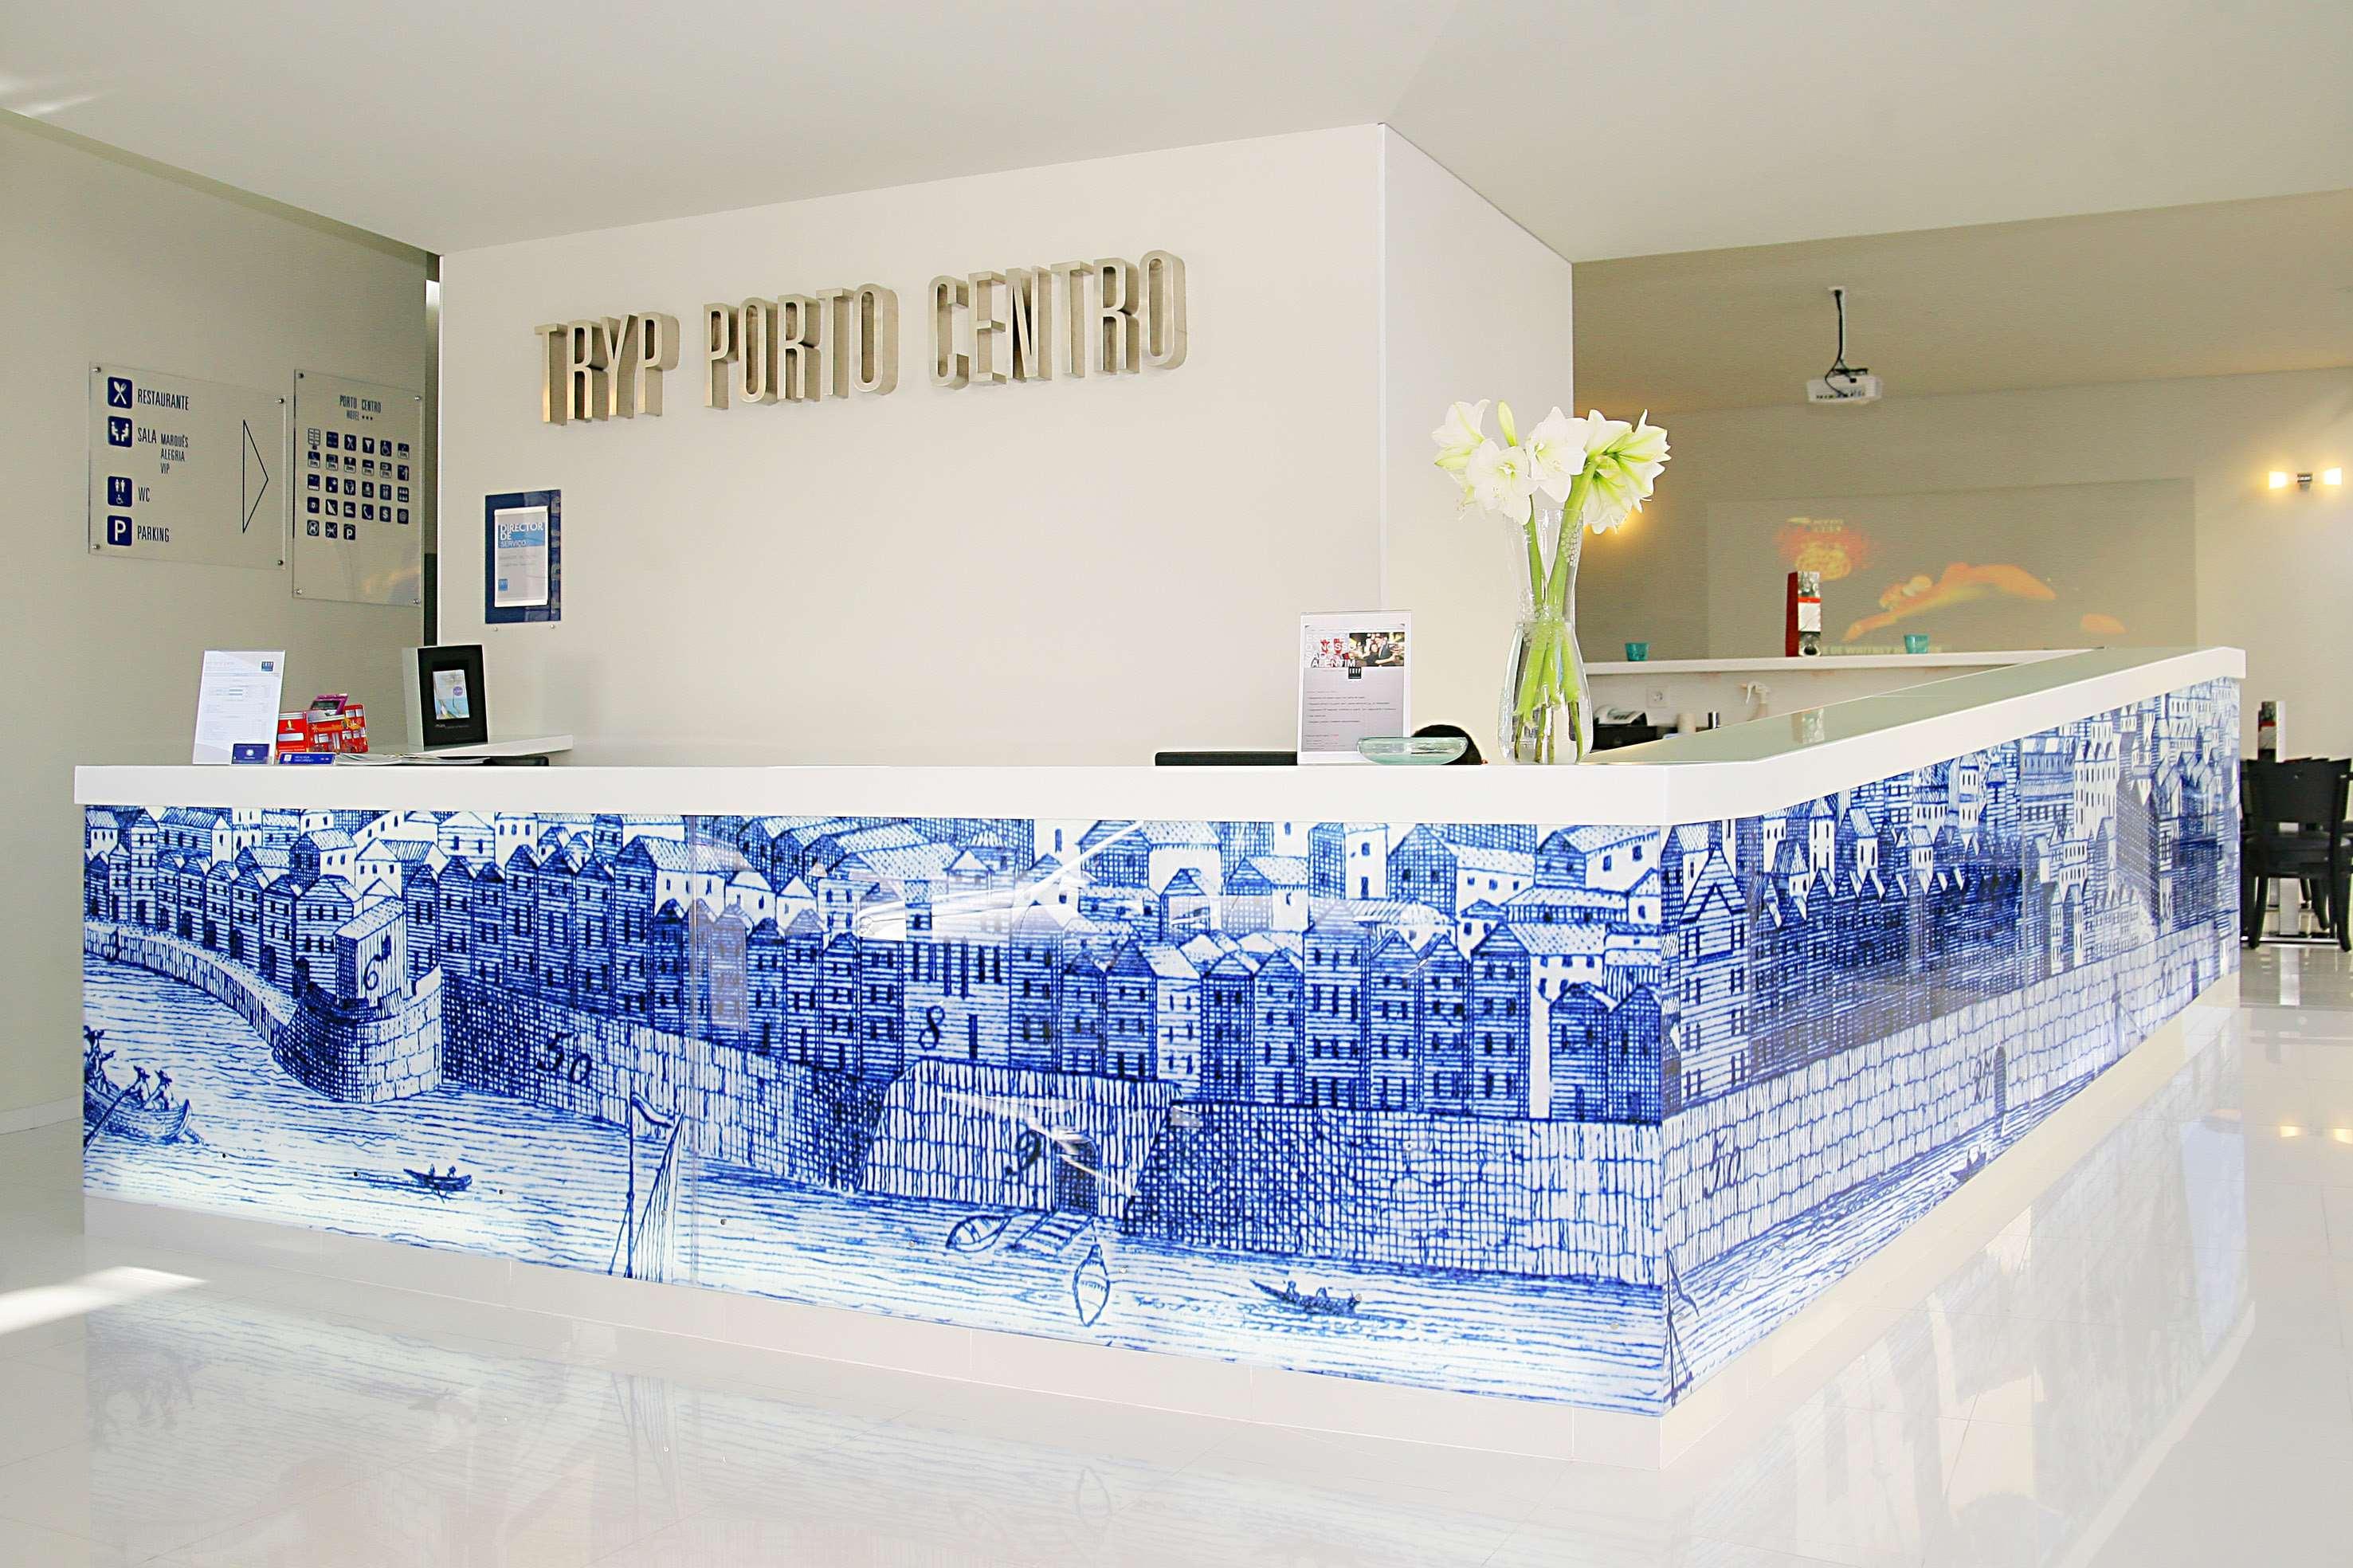 ทีอาร์วายพี พอร์โต เซ็นโทร Hotel ปอร์โต ภายใน รูปภาพ